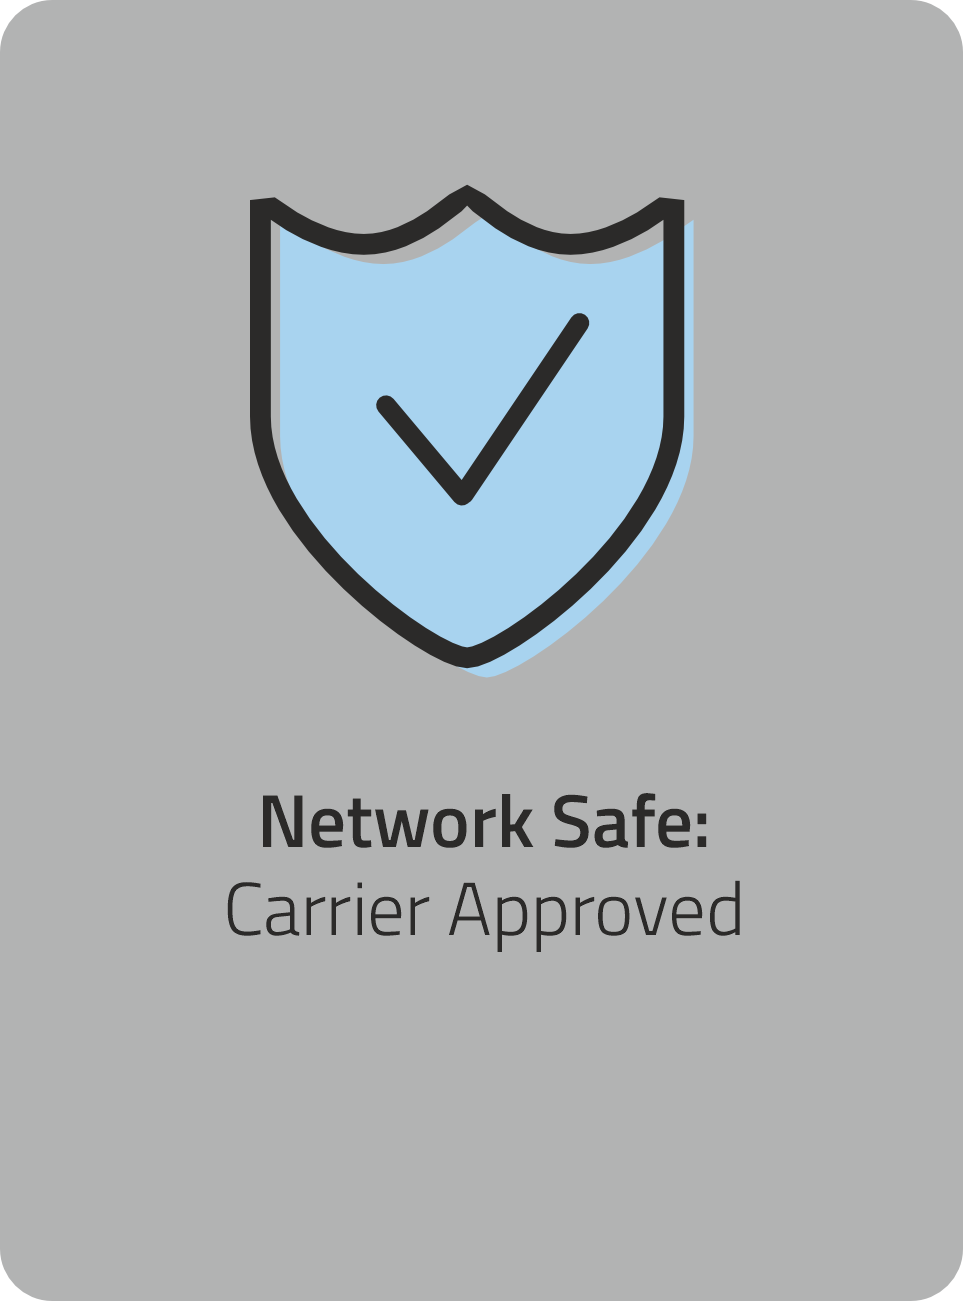 Network Safe